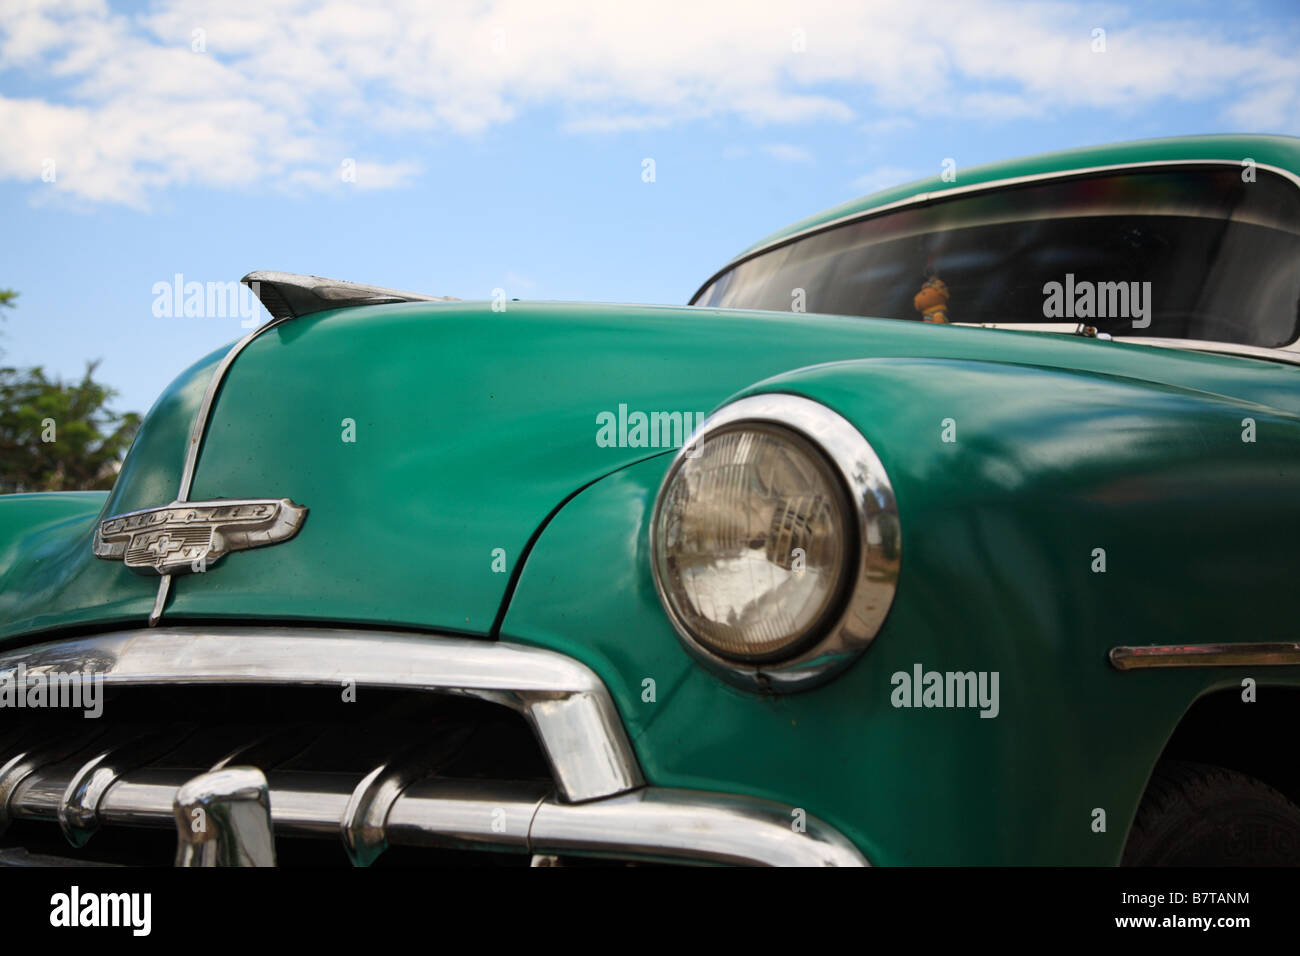 An old green American car in Cuba Stock Photo